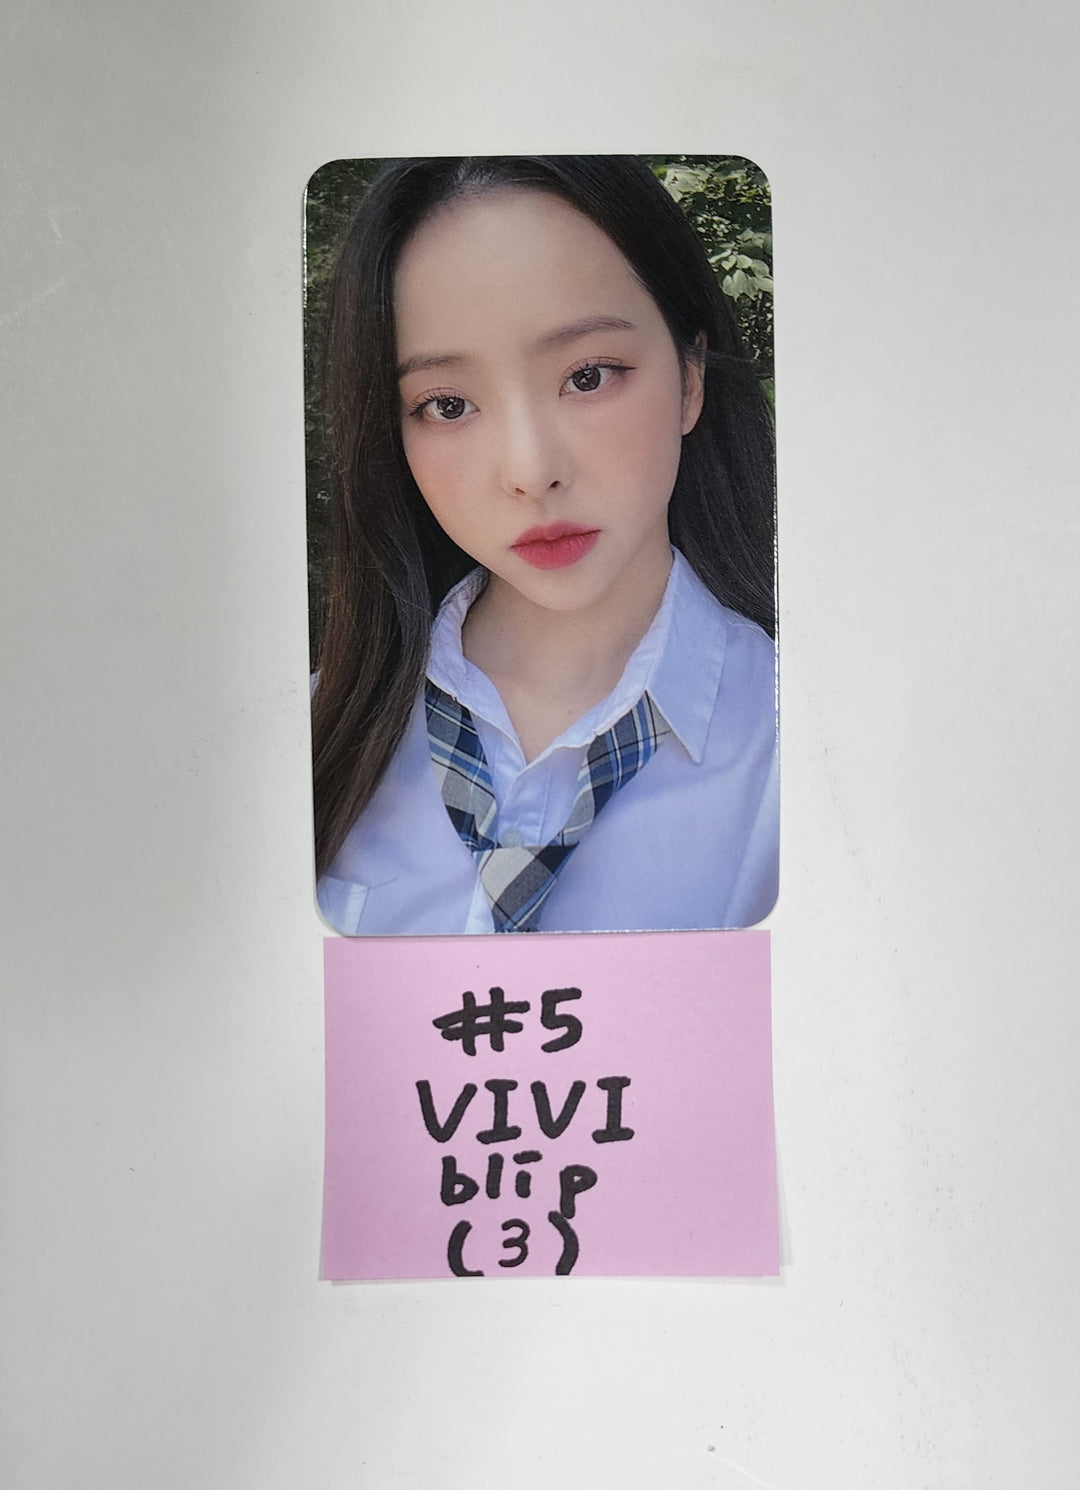 이달의 소녀 "Flip That" 여름 스페셜 미니앨범 - BLIP 예약판매 베넨핏 포토카드 2차